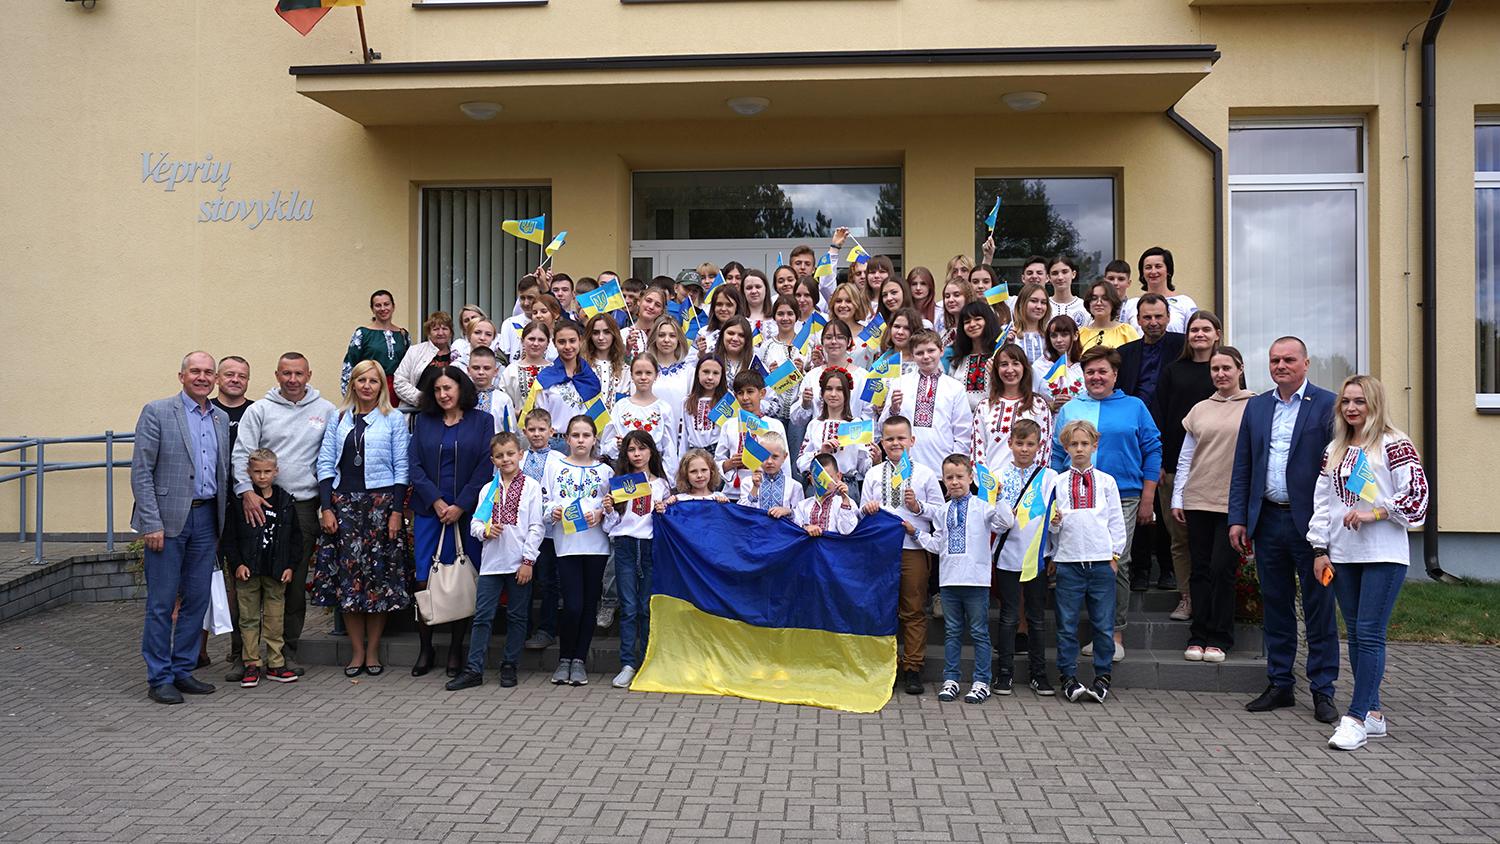 Vepriuose stovyklauja 60 vaikų iš Ukrainos / Chrisijos Kvietkauskienės nuotr. Stovyklos atidaryme.